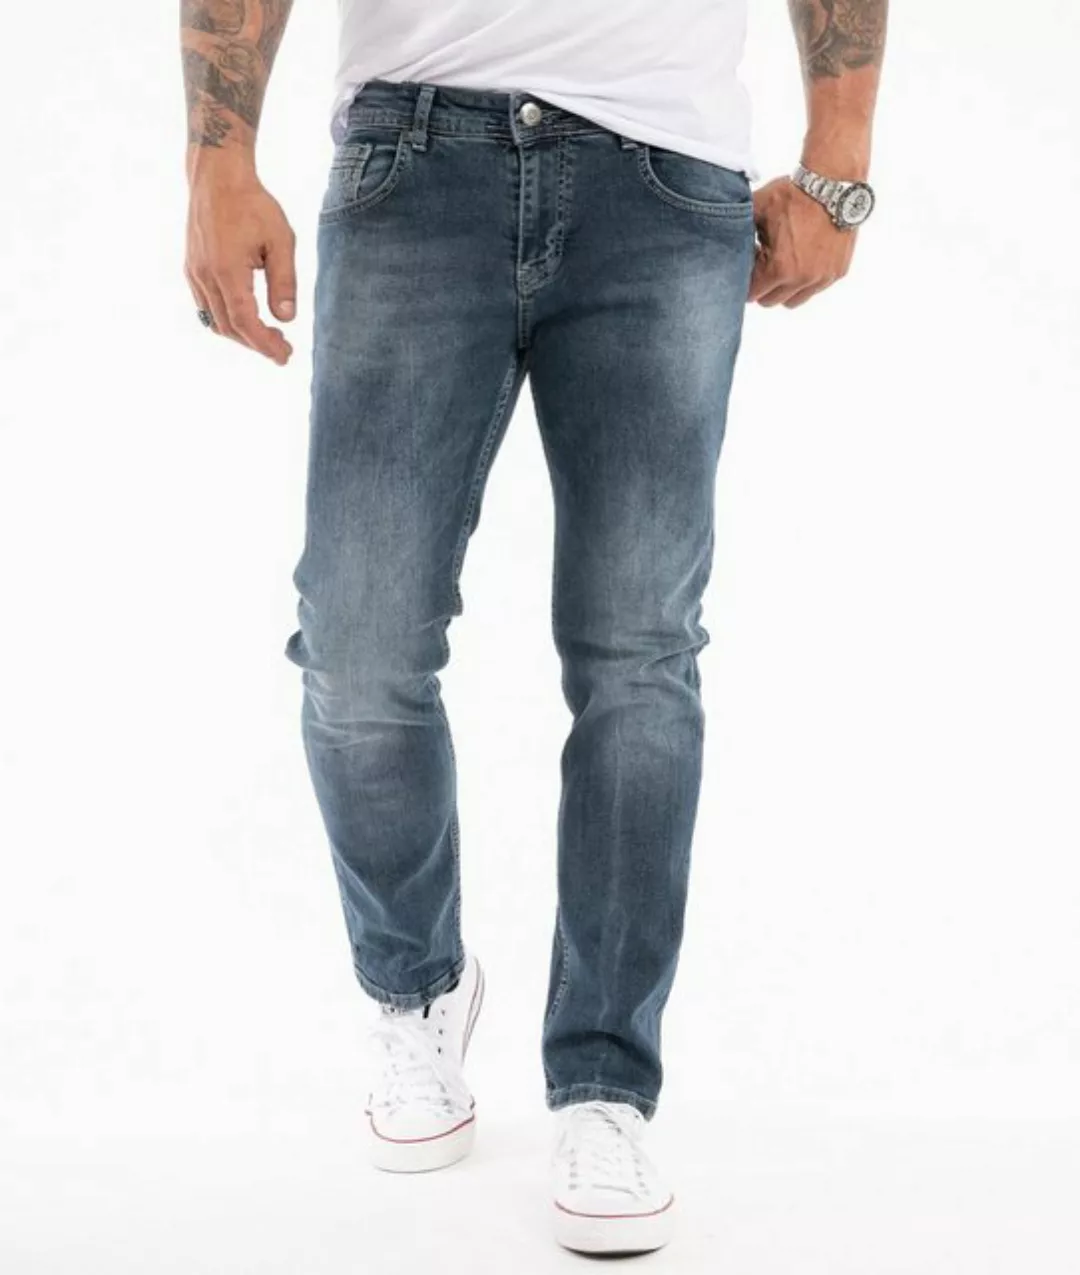 Indumentum Slim-fit-Jeans Herren Jeans Stonewashed Blau IS-307 günstig online kaufen